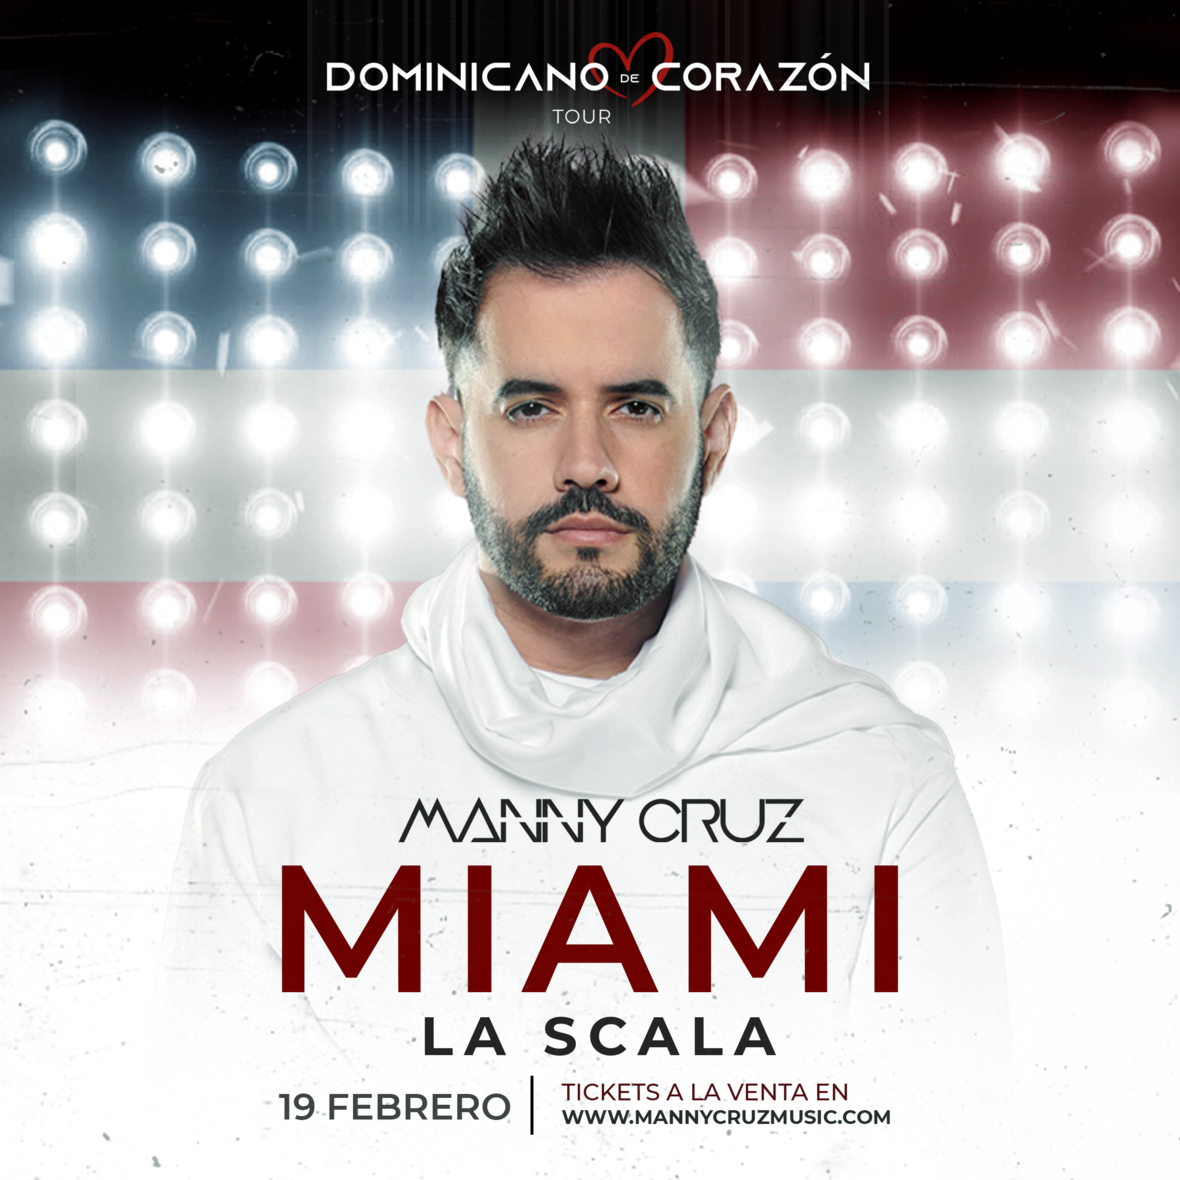 MANNY CRUZ de gira con “Dominicano De Corazón”